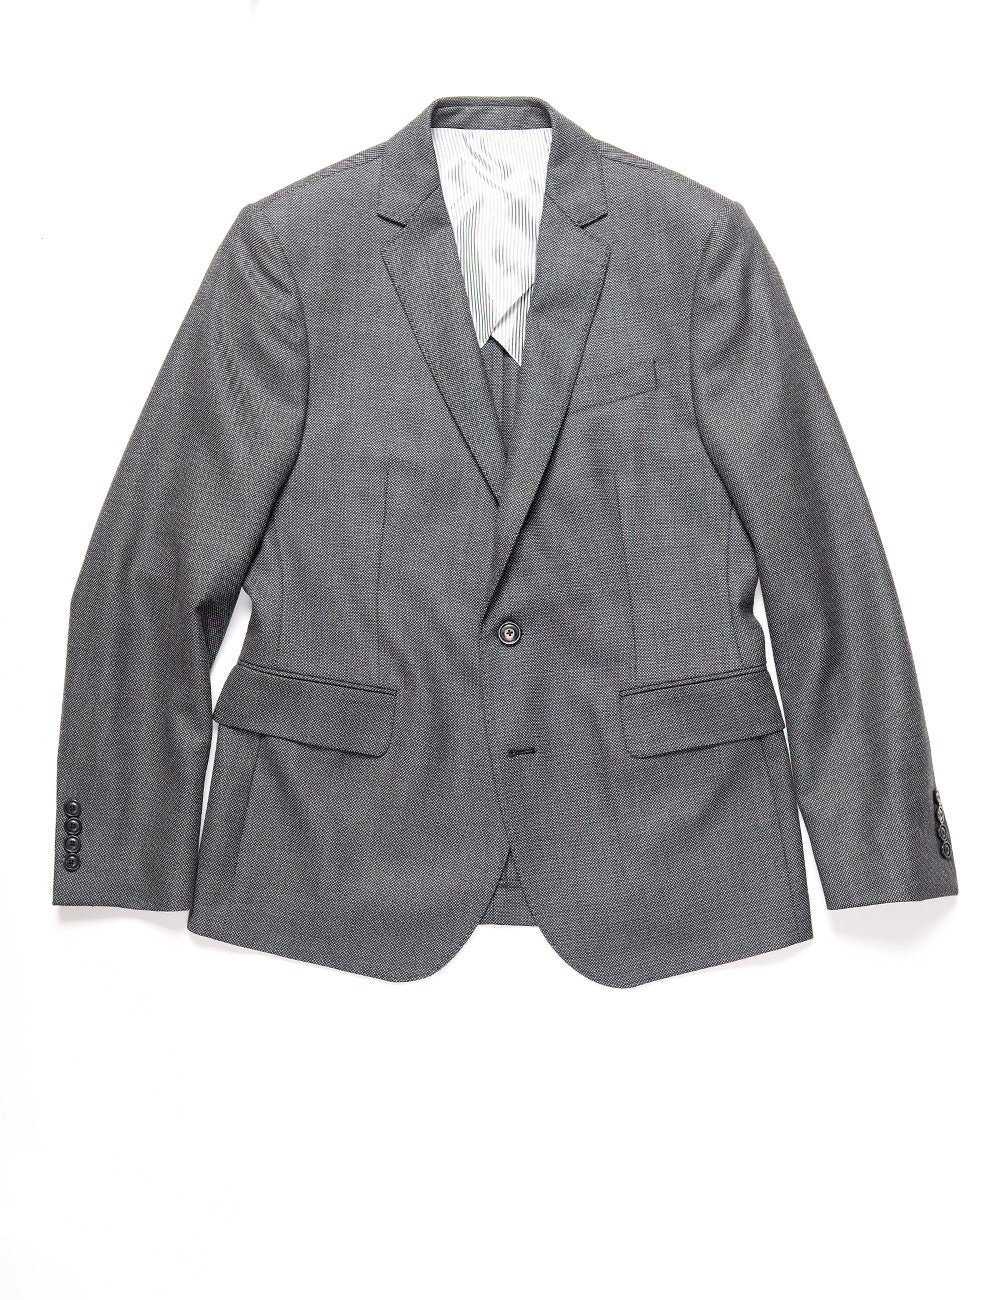 Brooklyn Tailors BKT50 Tailored Jacket in Birdseye Weave - Storm Gray full length flat shot